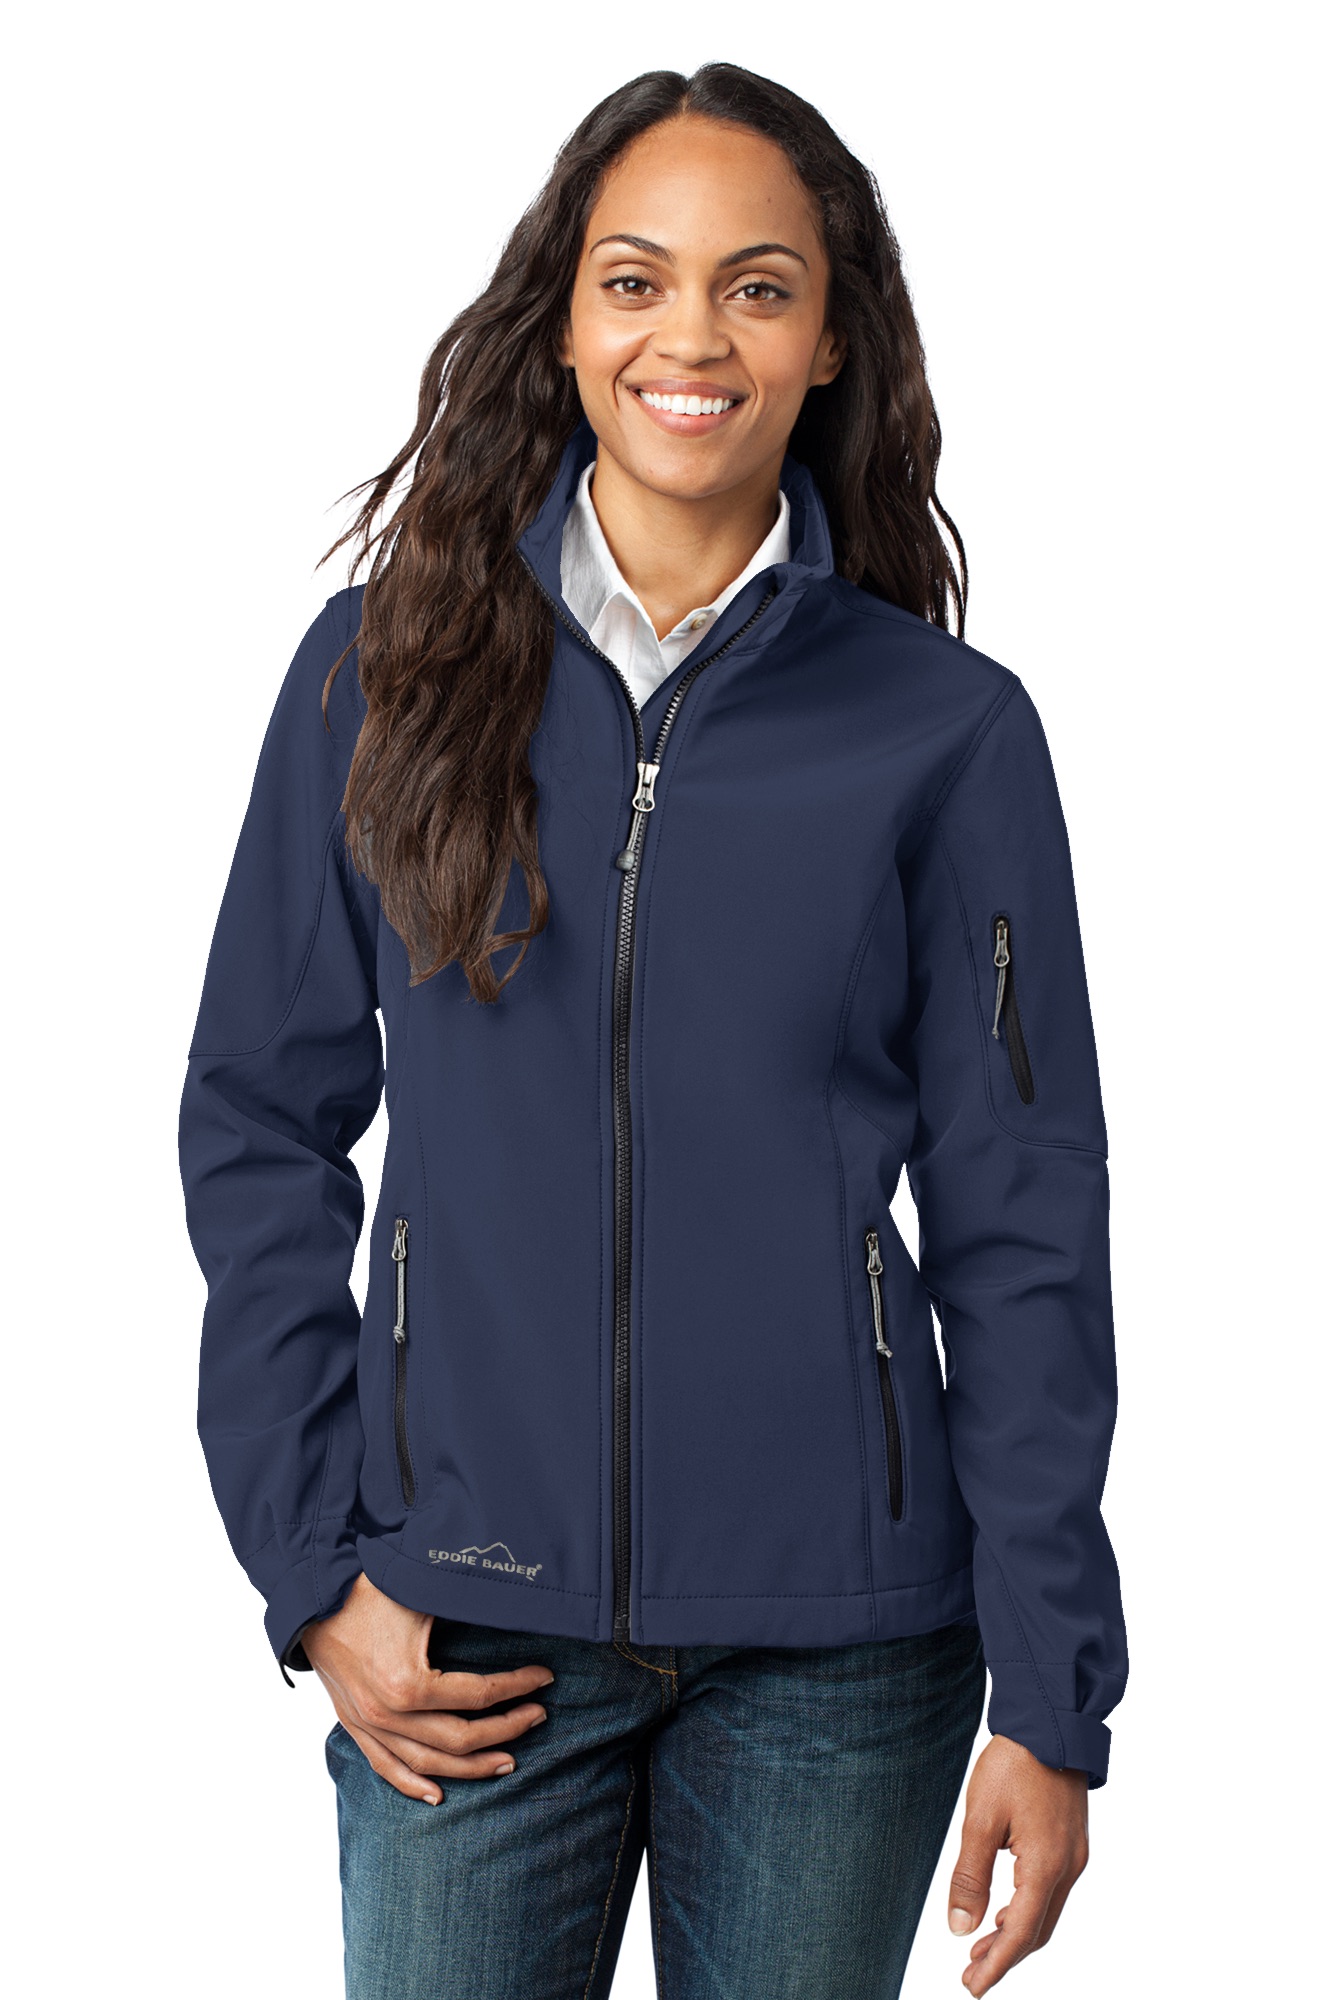 Ladies Eddie Bauer® Soft Shell Jacket – The Cape Marine